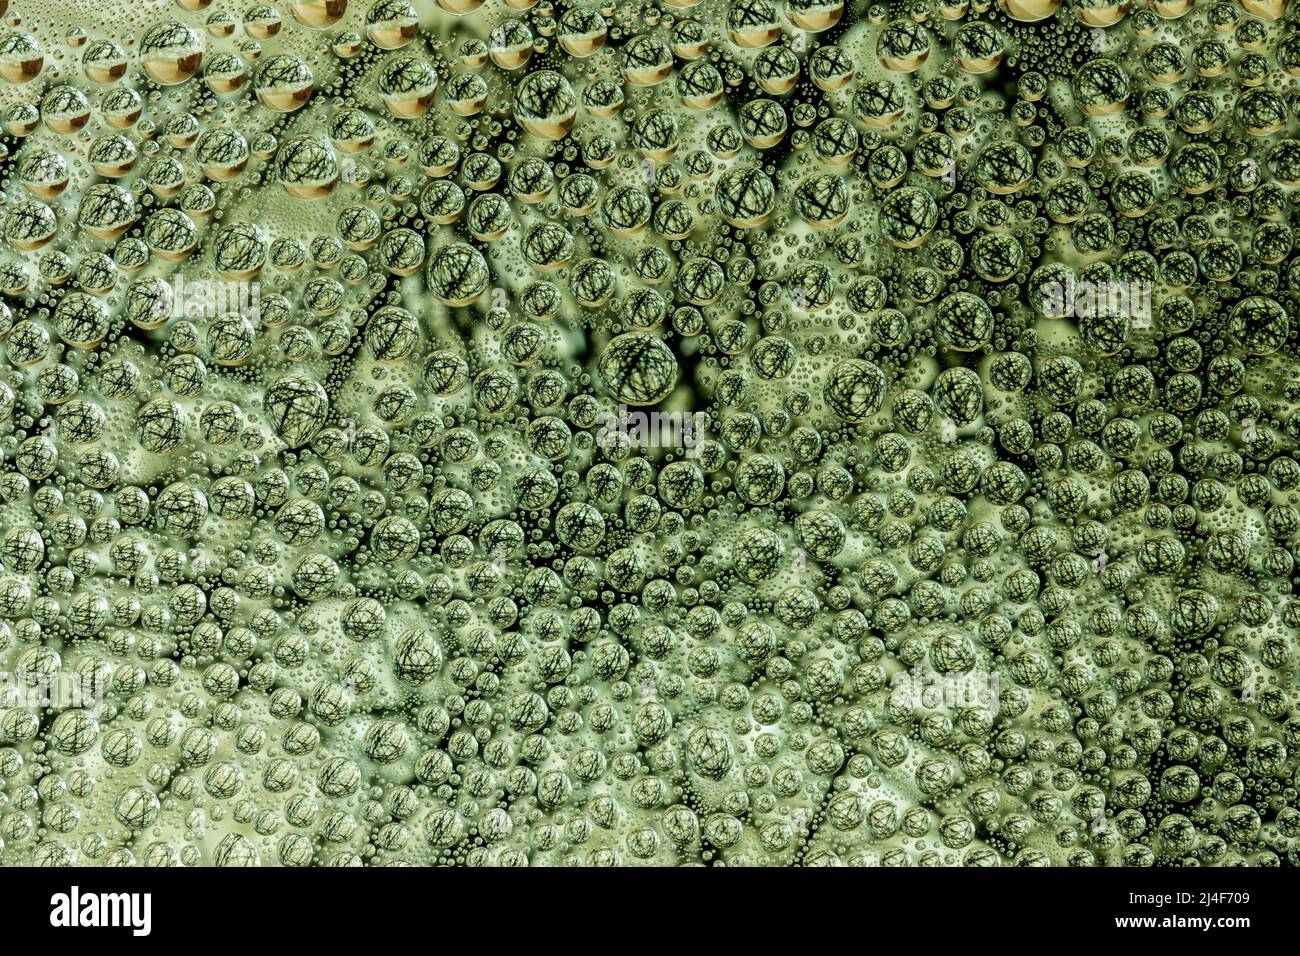 Fondo abstracto de gotas de agua en la superficie de cristal Foto de stock